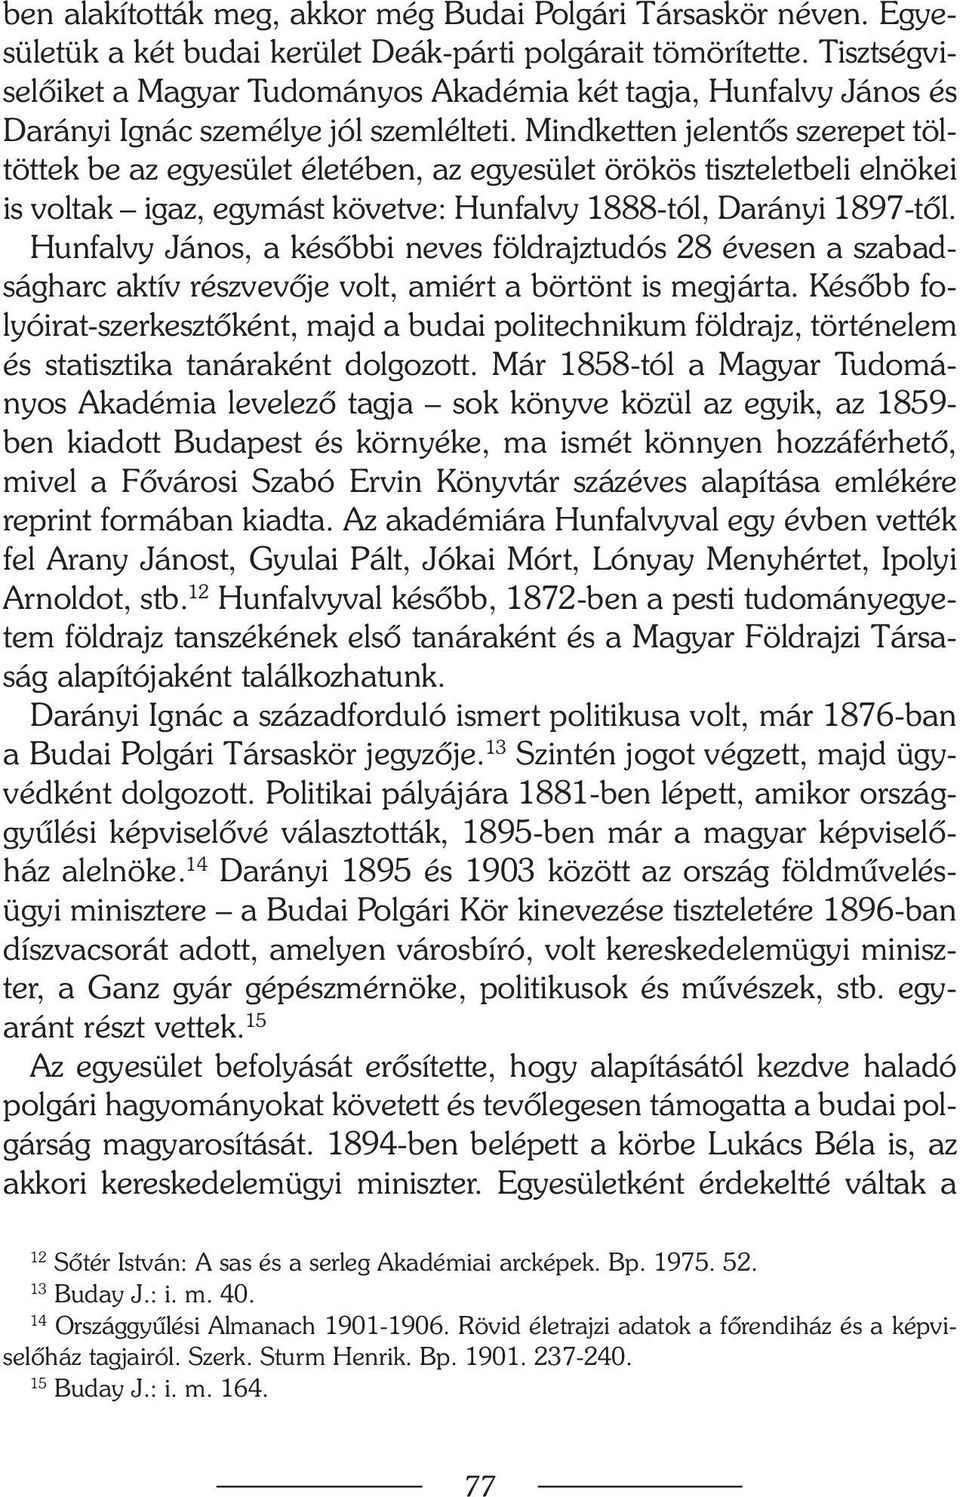 Mindketten jelentõs szerepet töltöttek be az egyesület életében, az egyesület örökös tiszteletbeli elnökei is voltak igaz, egymást követve: Hunfalvy 1888-tól, Darányi 1897-tõl.